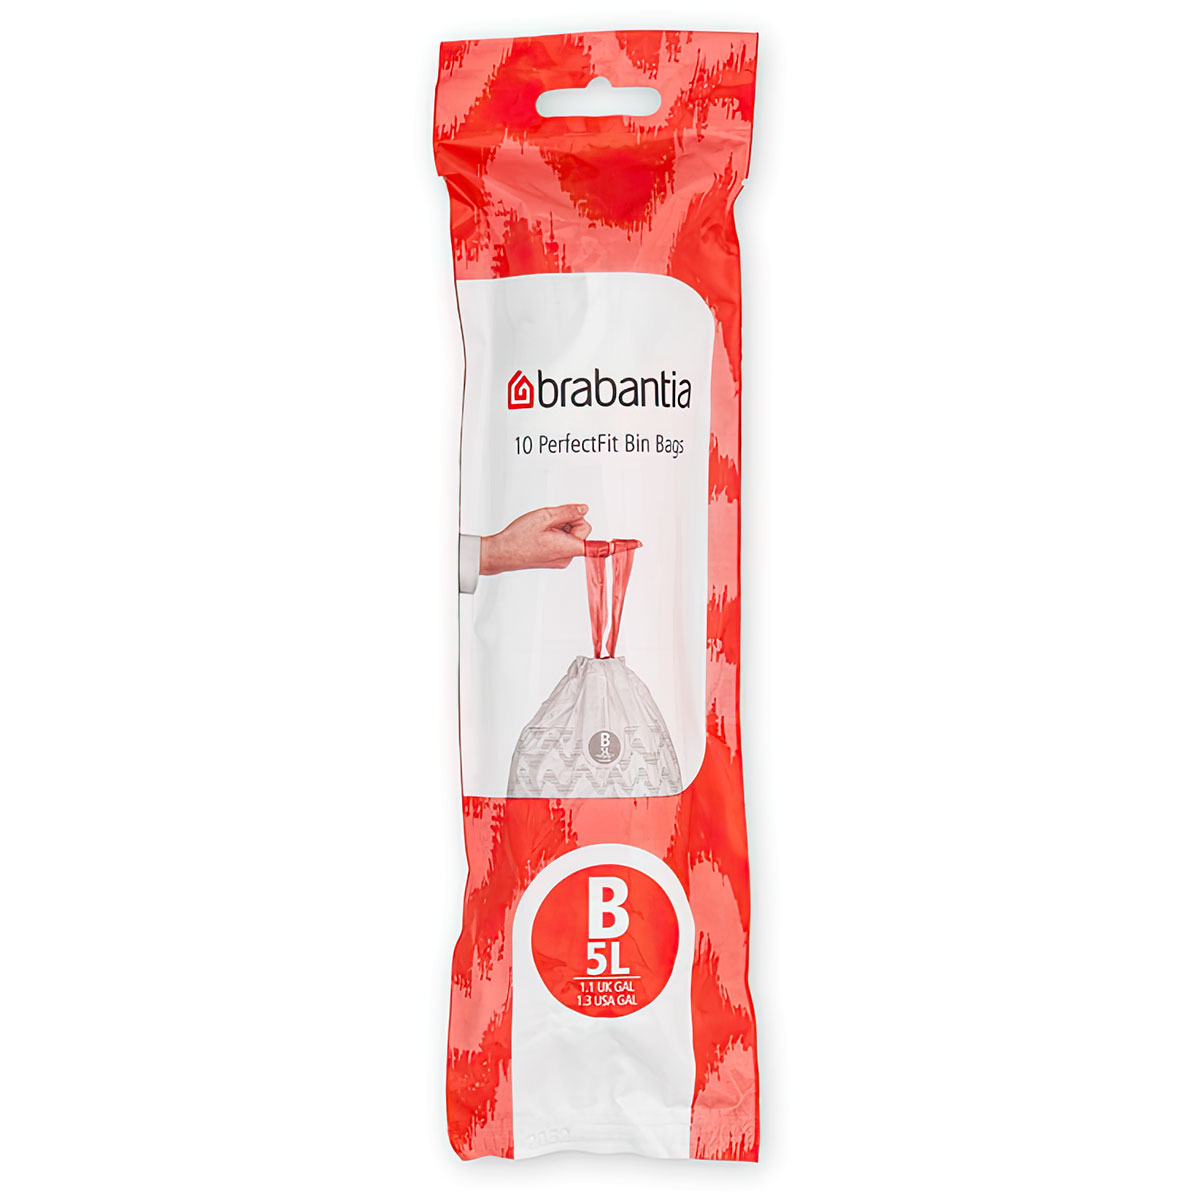 мешки для мусора brabantia perfectfit b 5л упаковка диспенсер 40шт Пакет пластиковый Brabantia PerfectFit B 5л 10шт